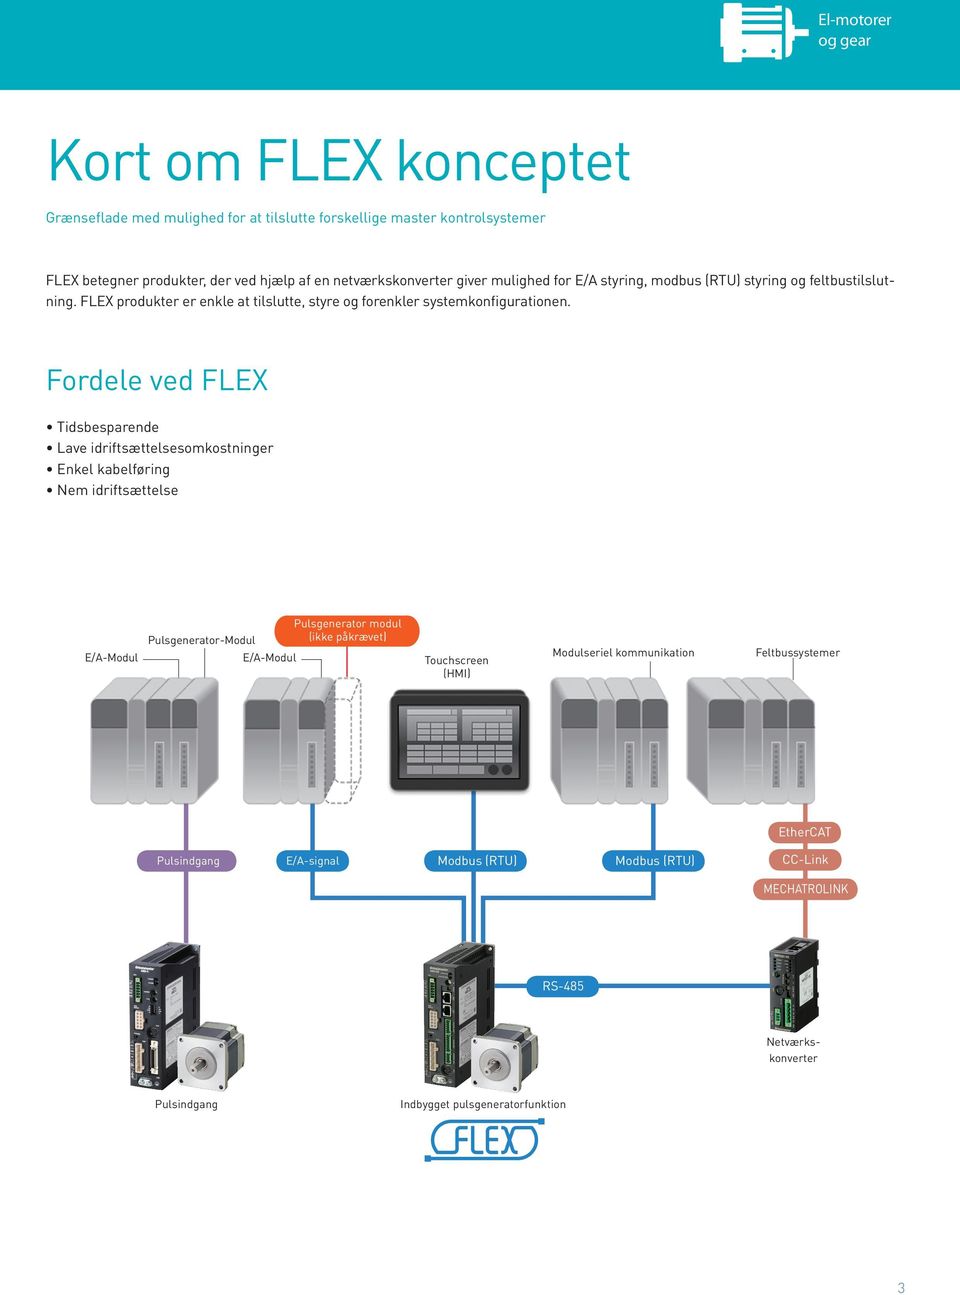 Fordele ved FLEX Tidsbesparende Lave idriftsættelsesomkostninger Enkel kabelføring Nem idriftsættelse E/A-Modul Pulsgenerator-Modul E/A-Modul Pulsgenerator modul (ikke påkrævet)